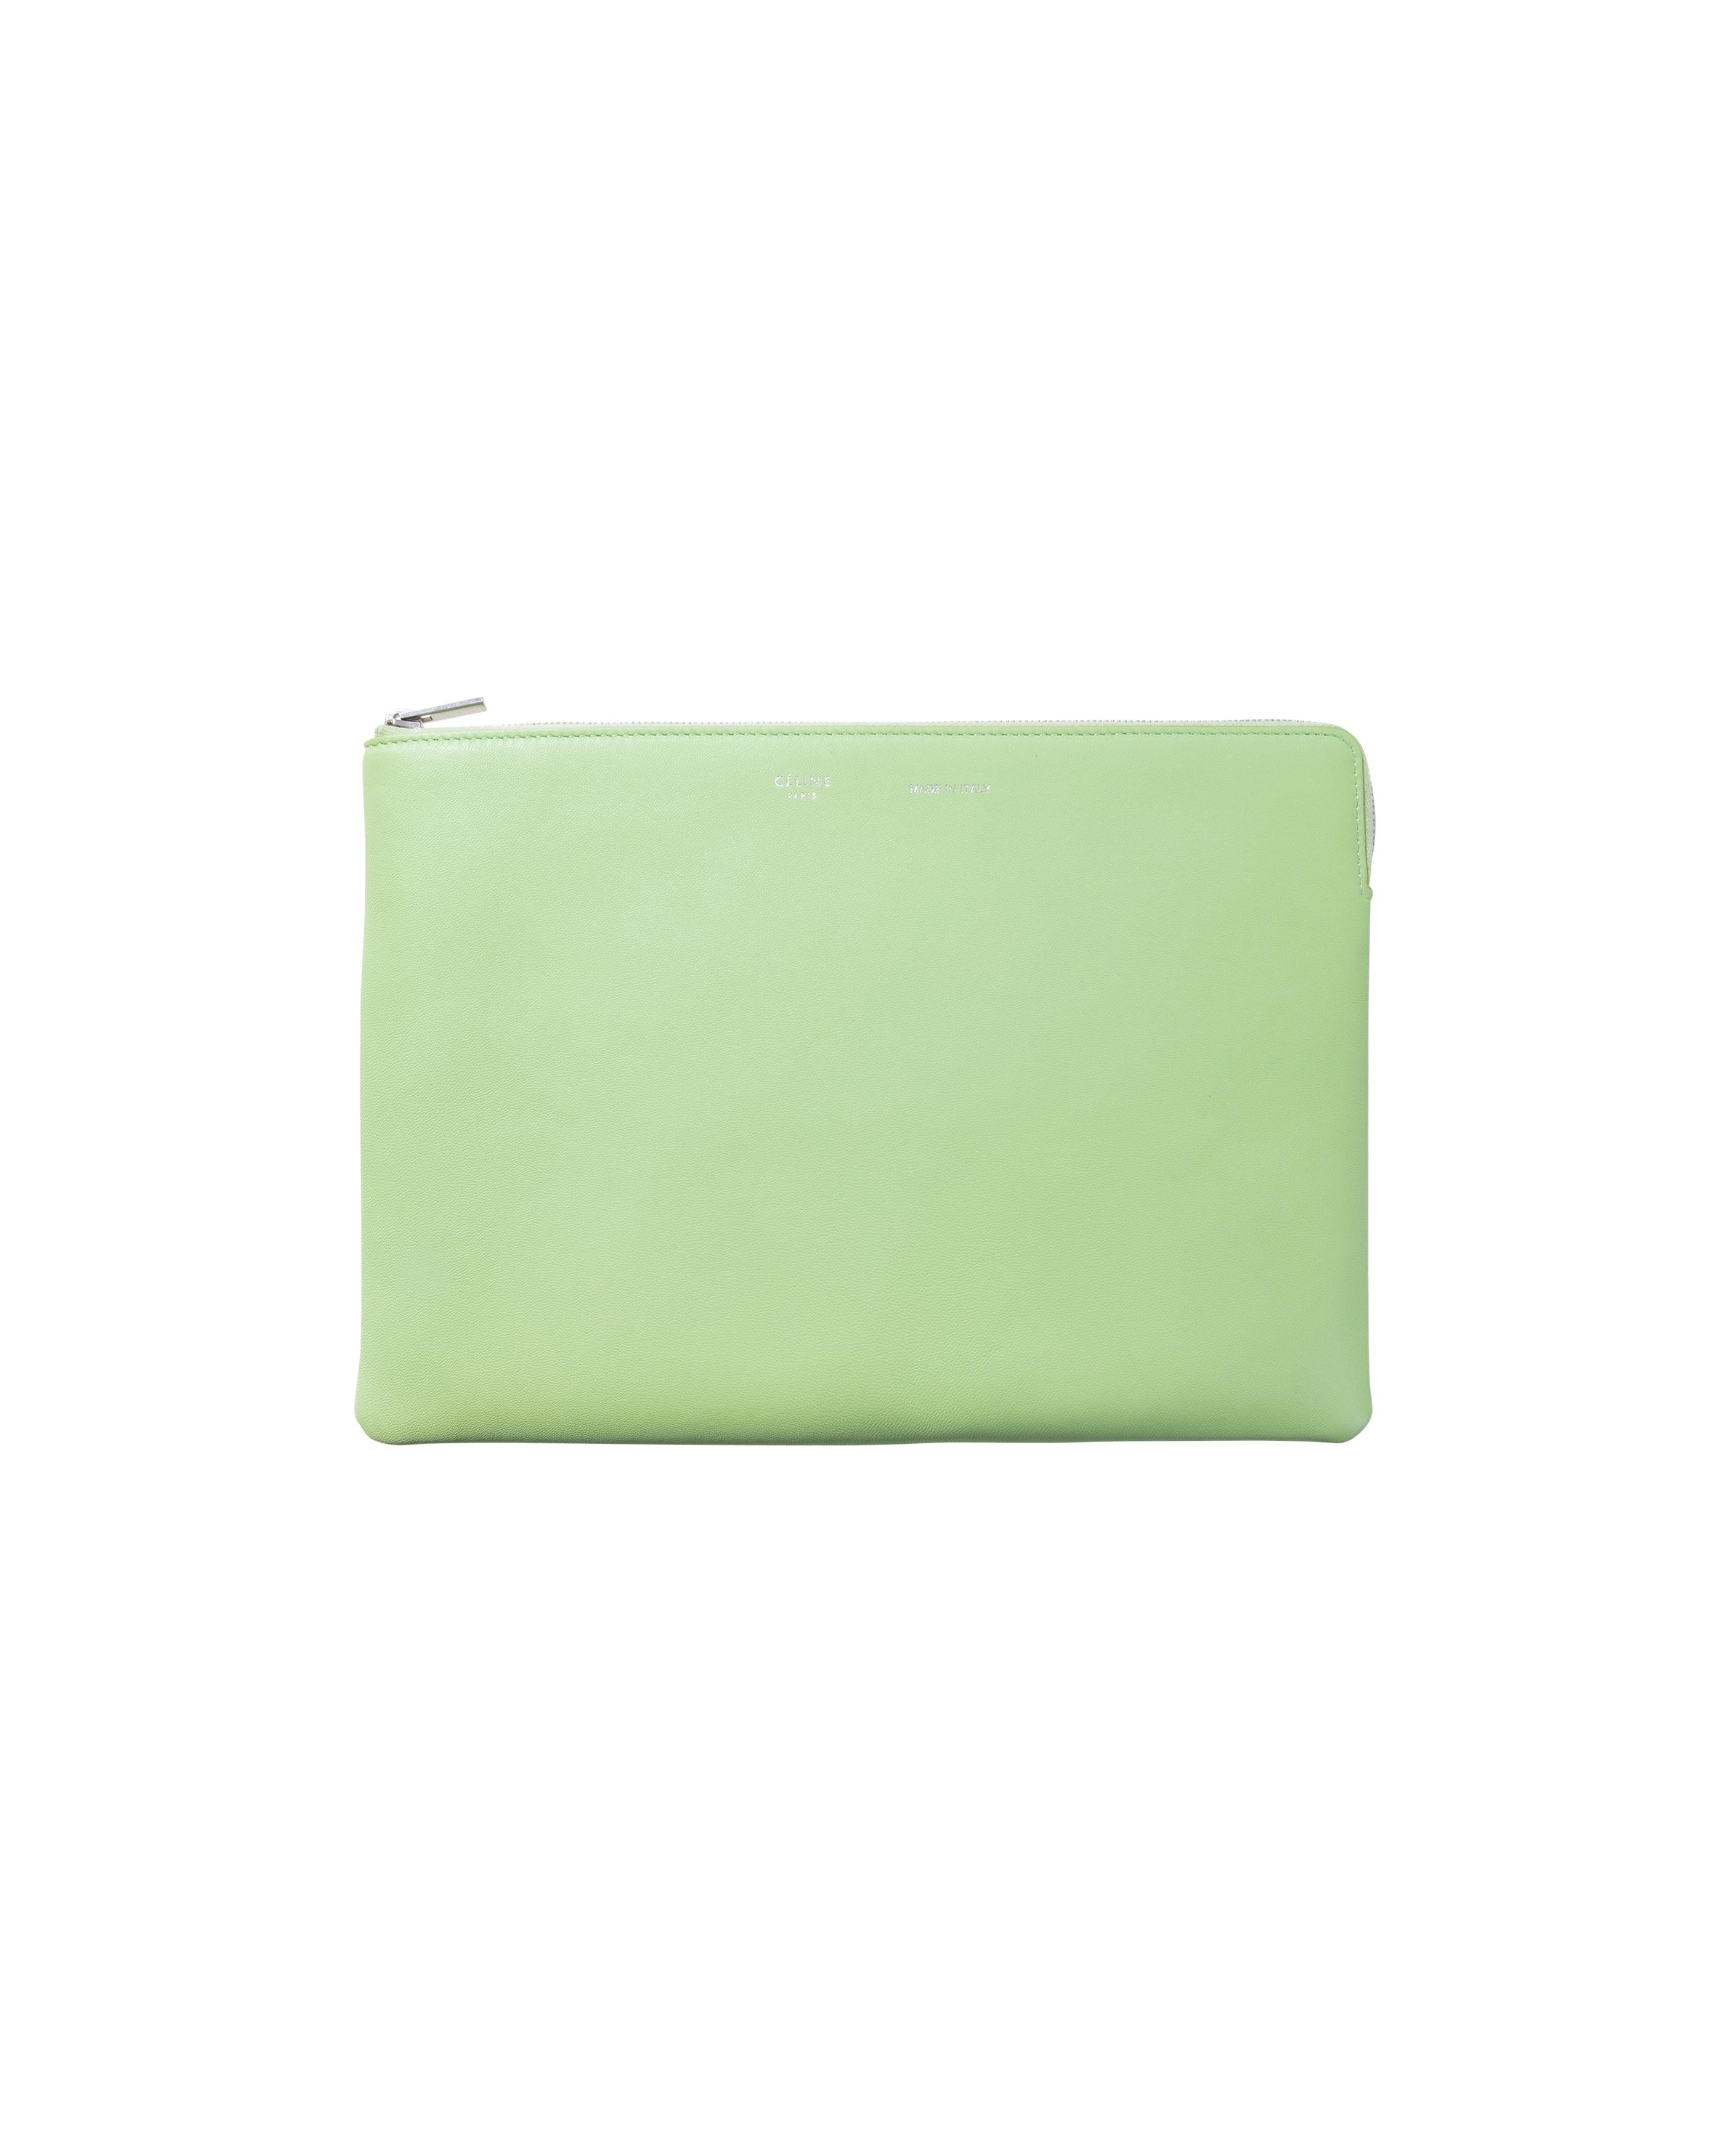 S/S 2018 Old Céline by Phoebe Philo Sac à main en PVC avec pochette intérieure verte Pour femmes en vente